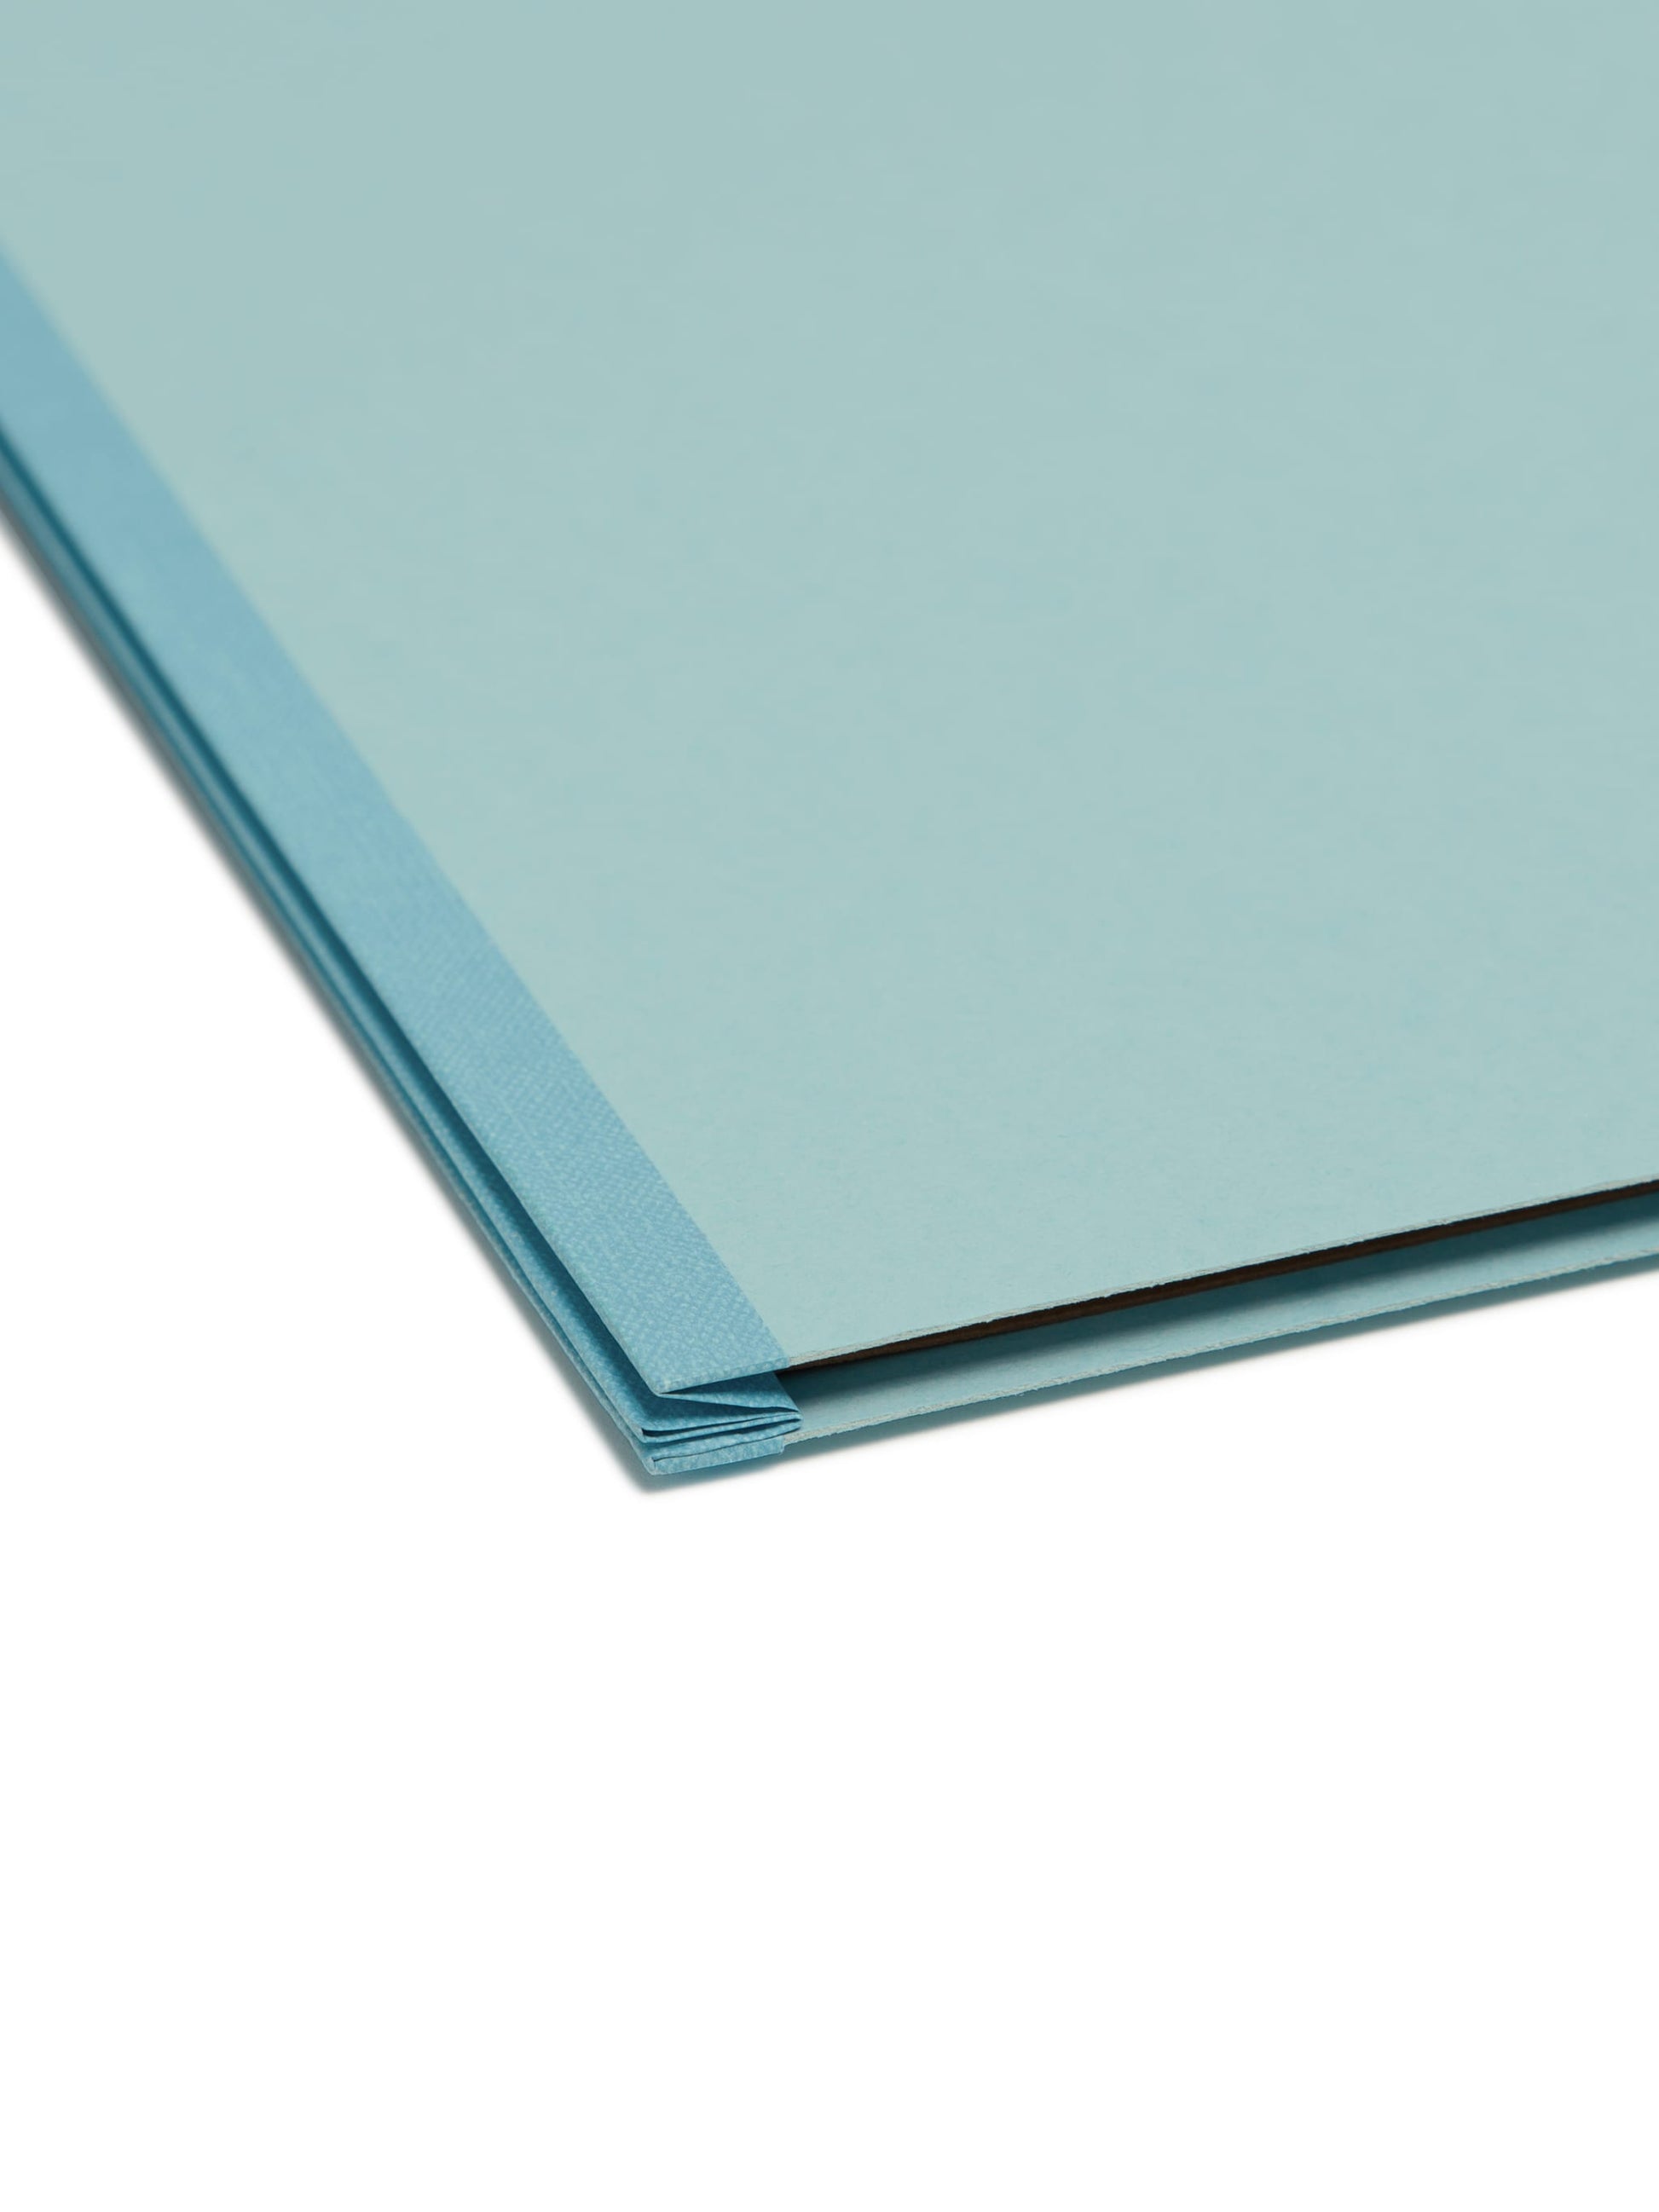 SafeSHIELD® Pressboard Classification File Folders, 1 Divider, 2 inch Expansion, Blue Color, Legal Size, Set of 0, 30086486187306